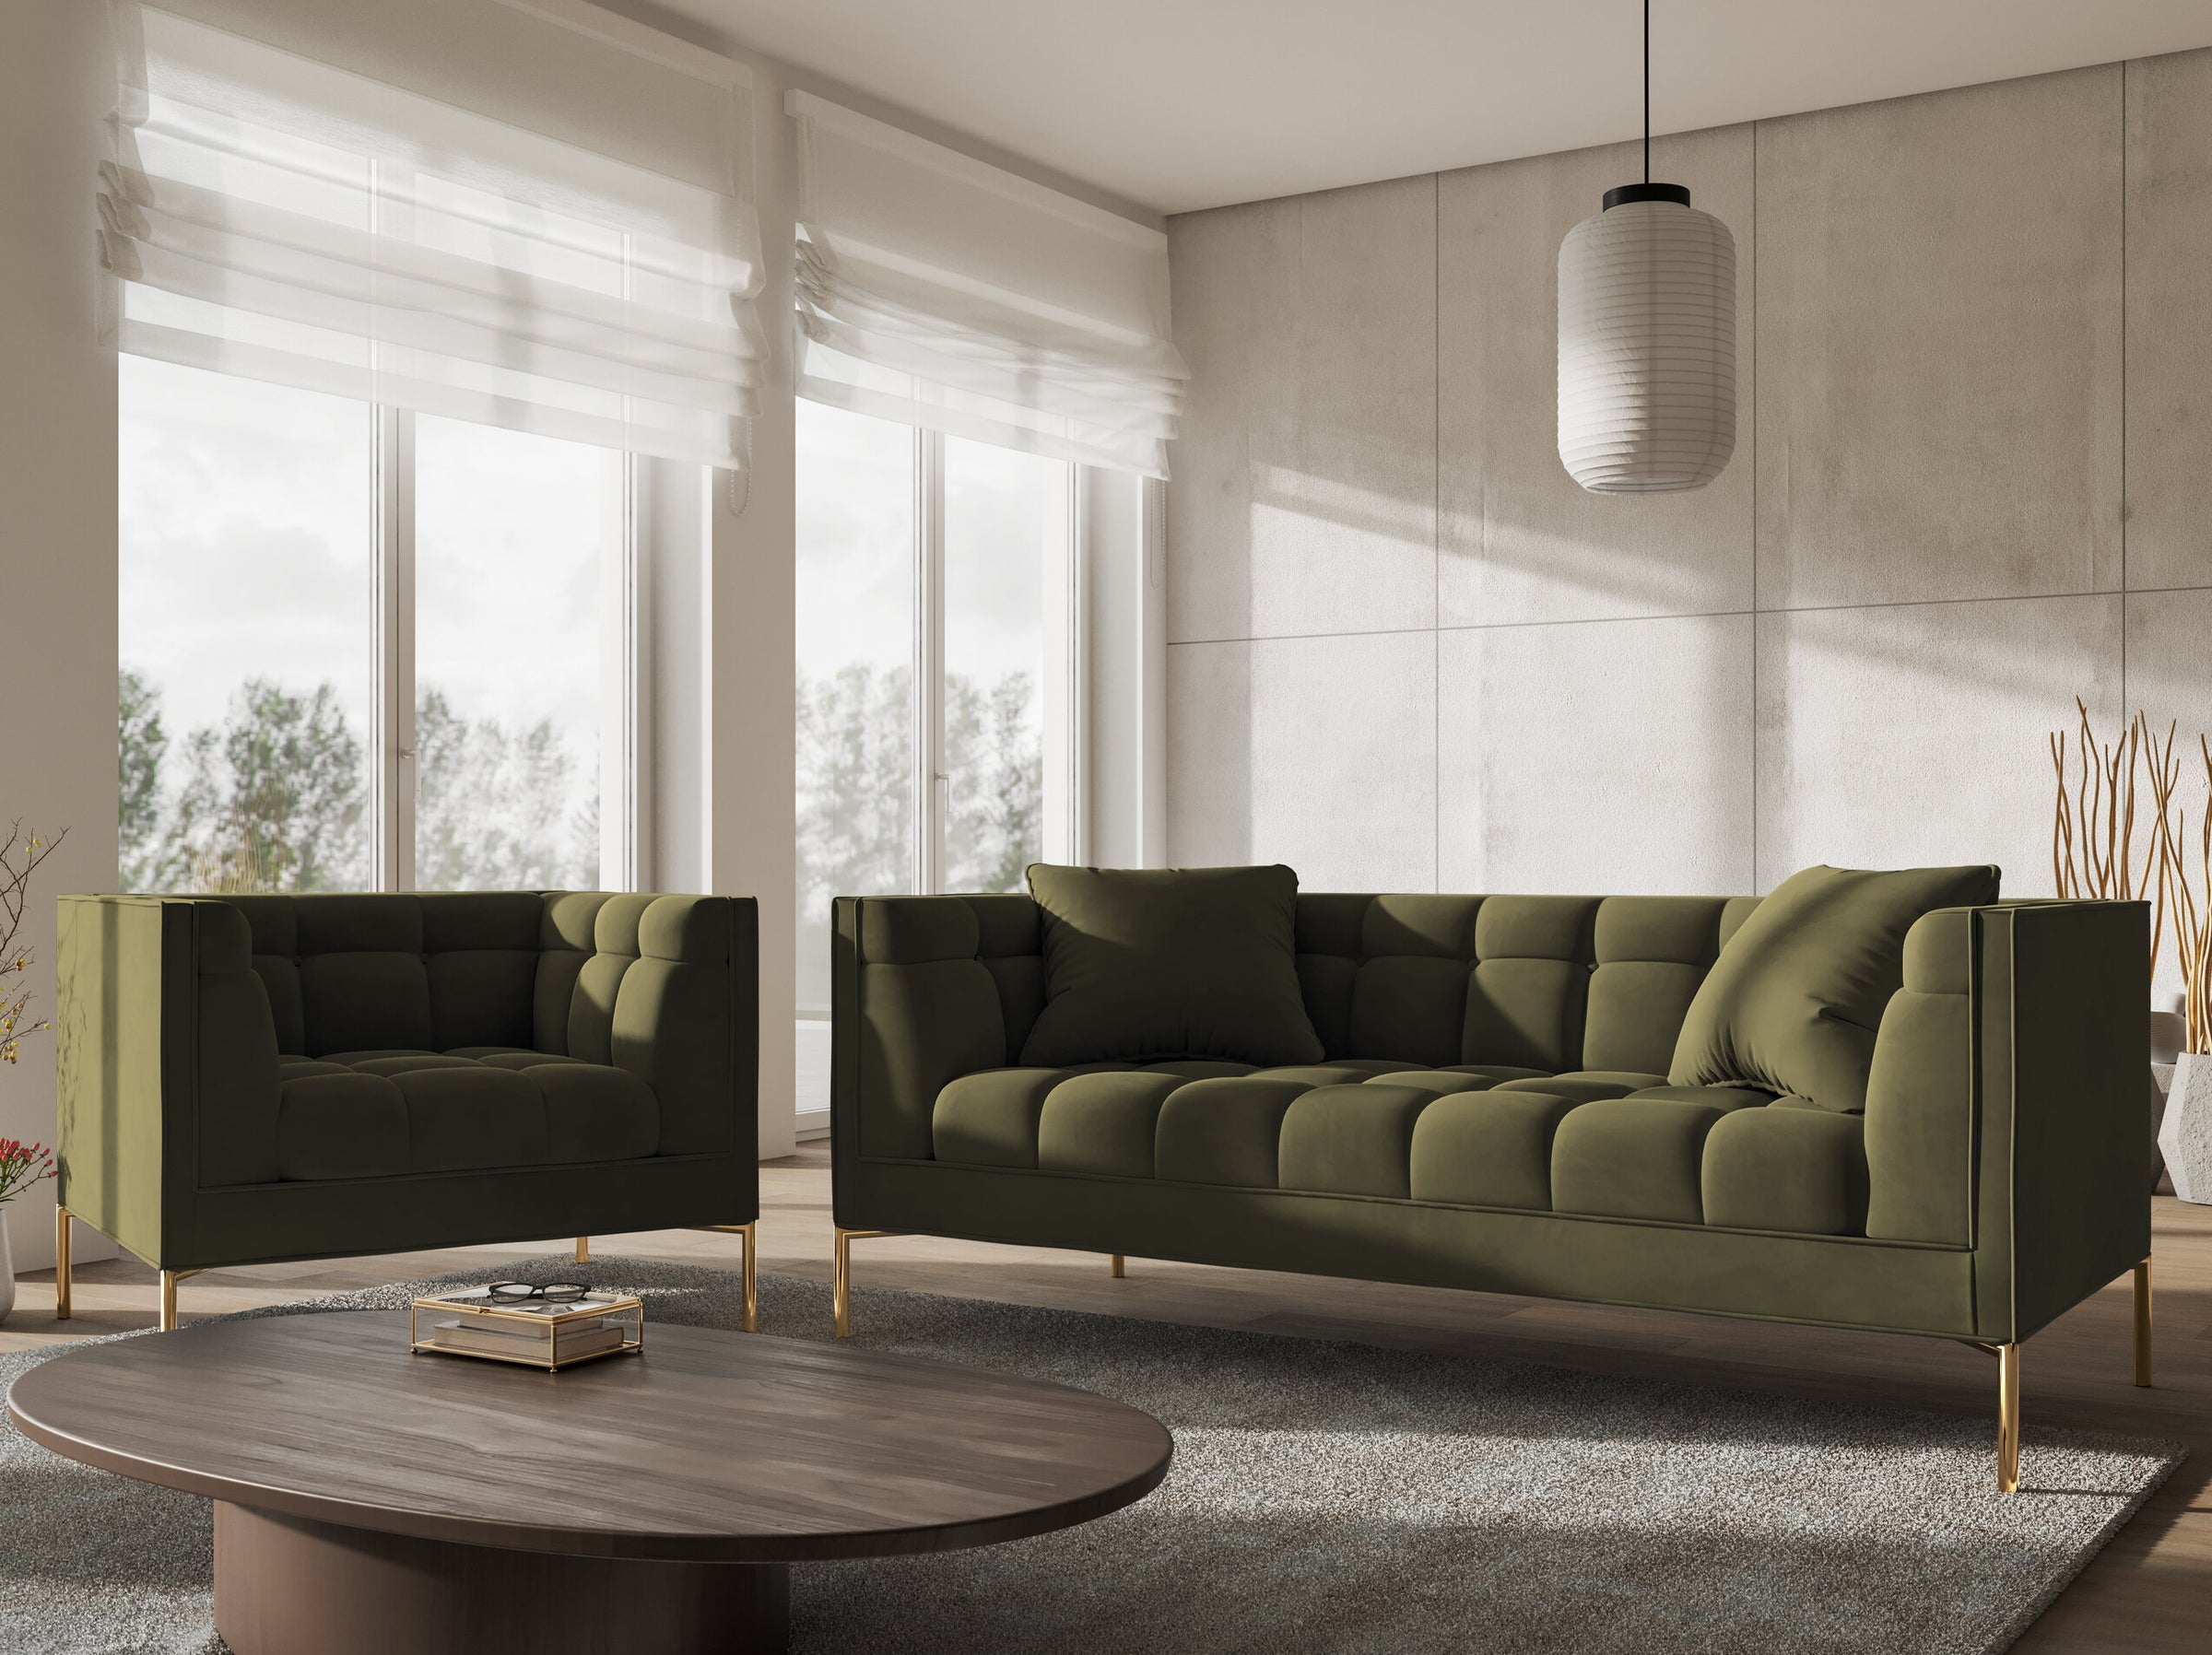 Karoo sofas velvet green